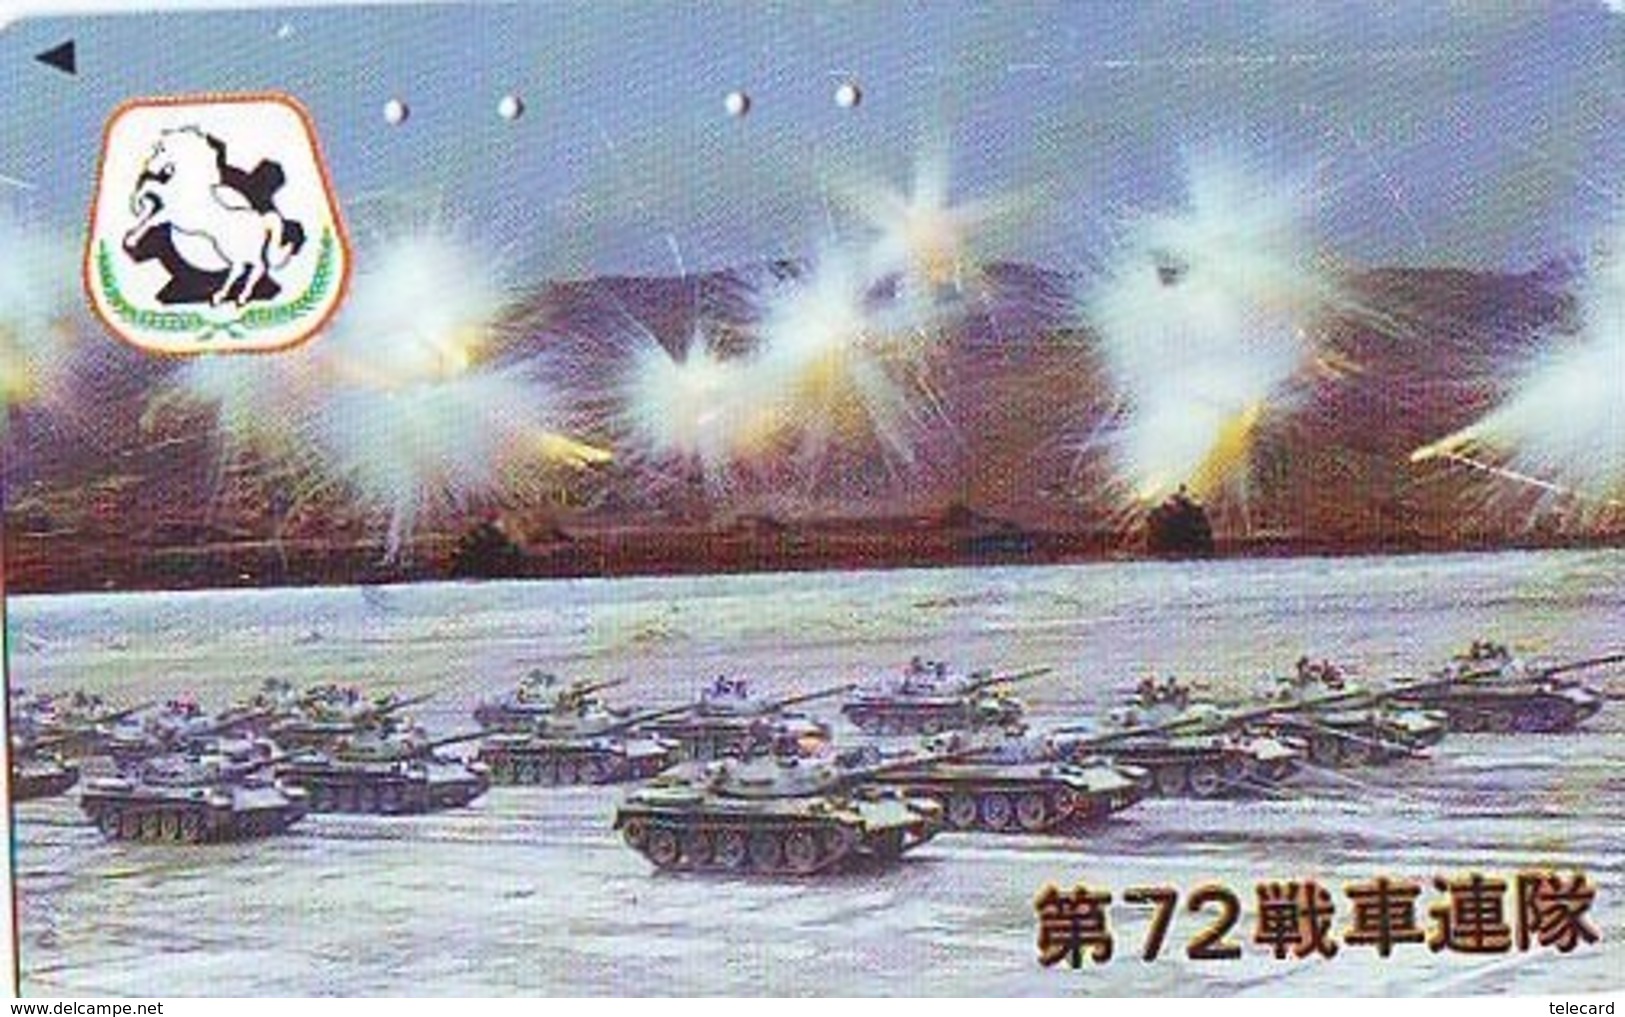 Télécarte JAPON * WAR TANK (229) MILITAIRY LEGER ARMEE PANZER Char De Guerre * KRIEG * JAPAN Phonecard Army - Armée